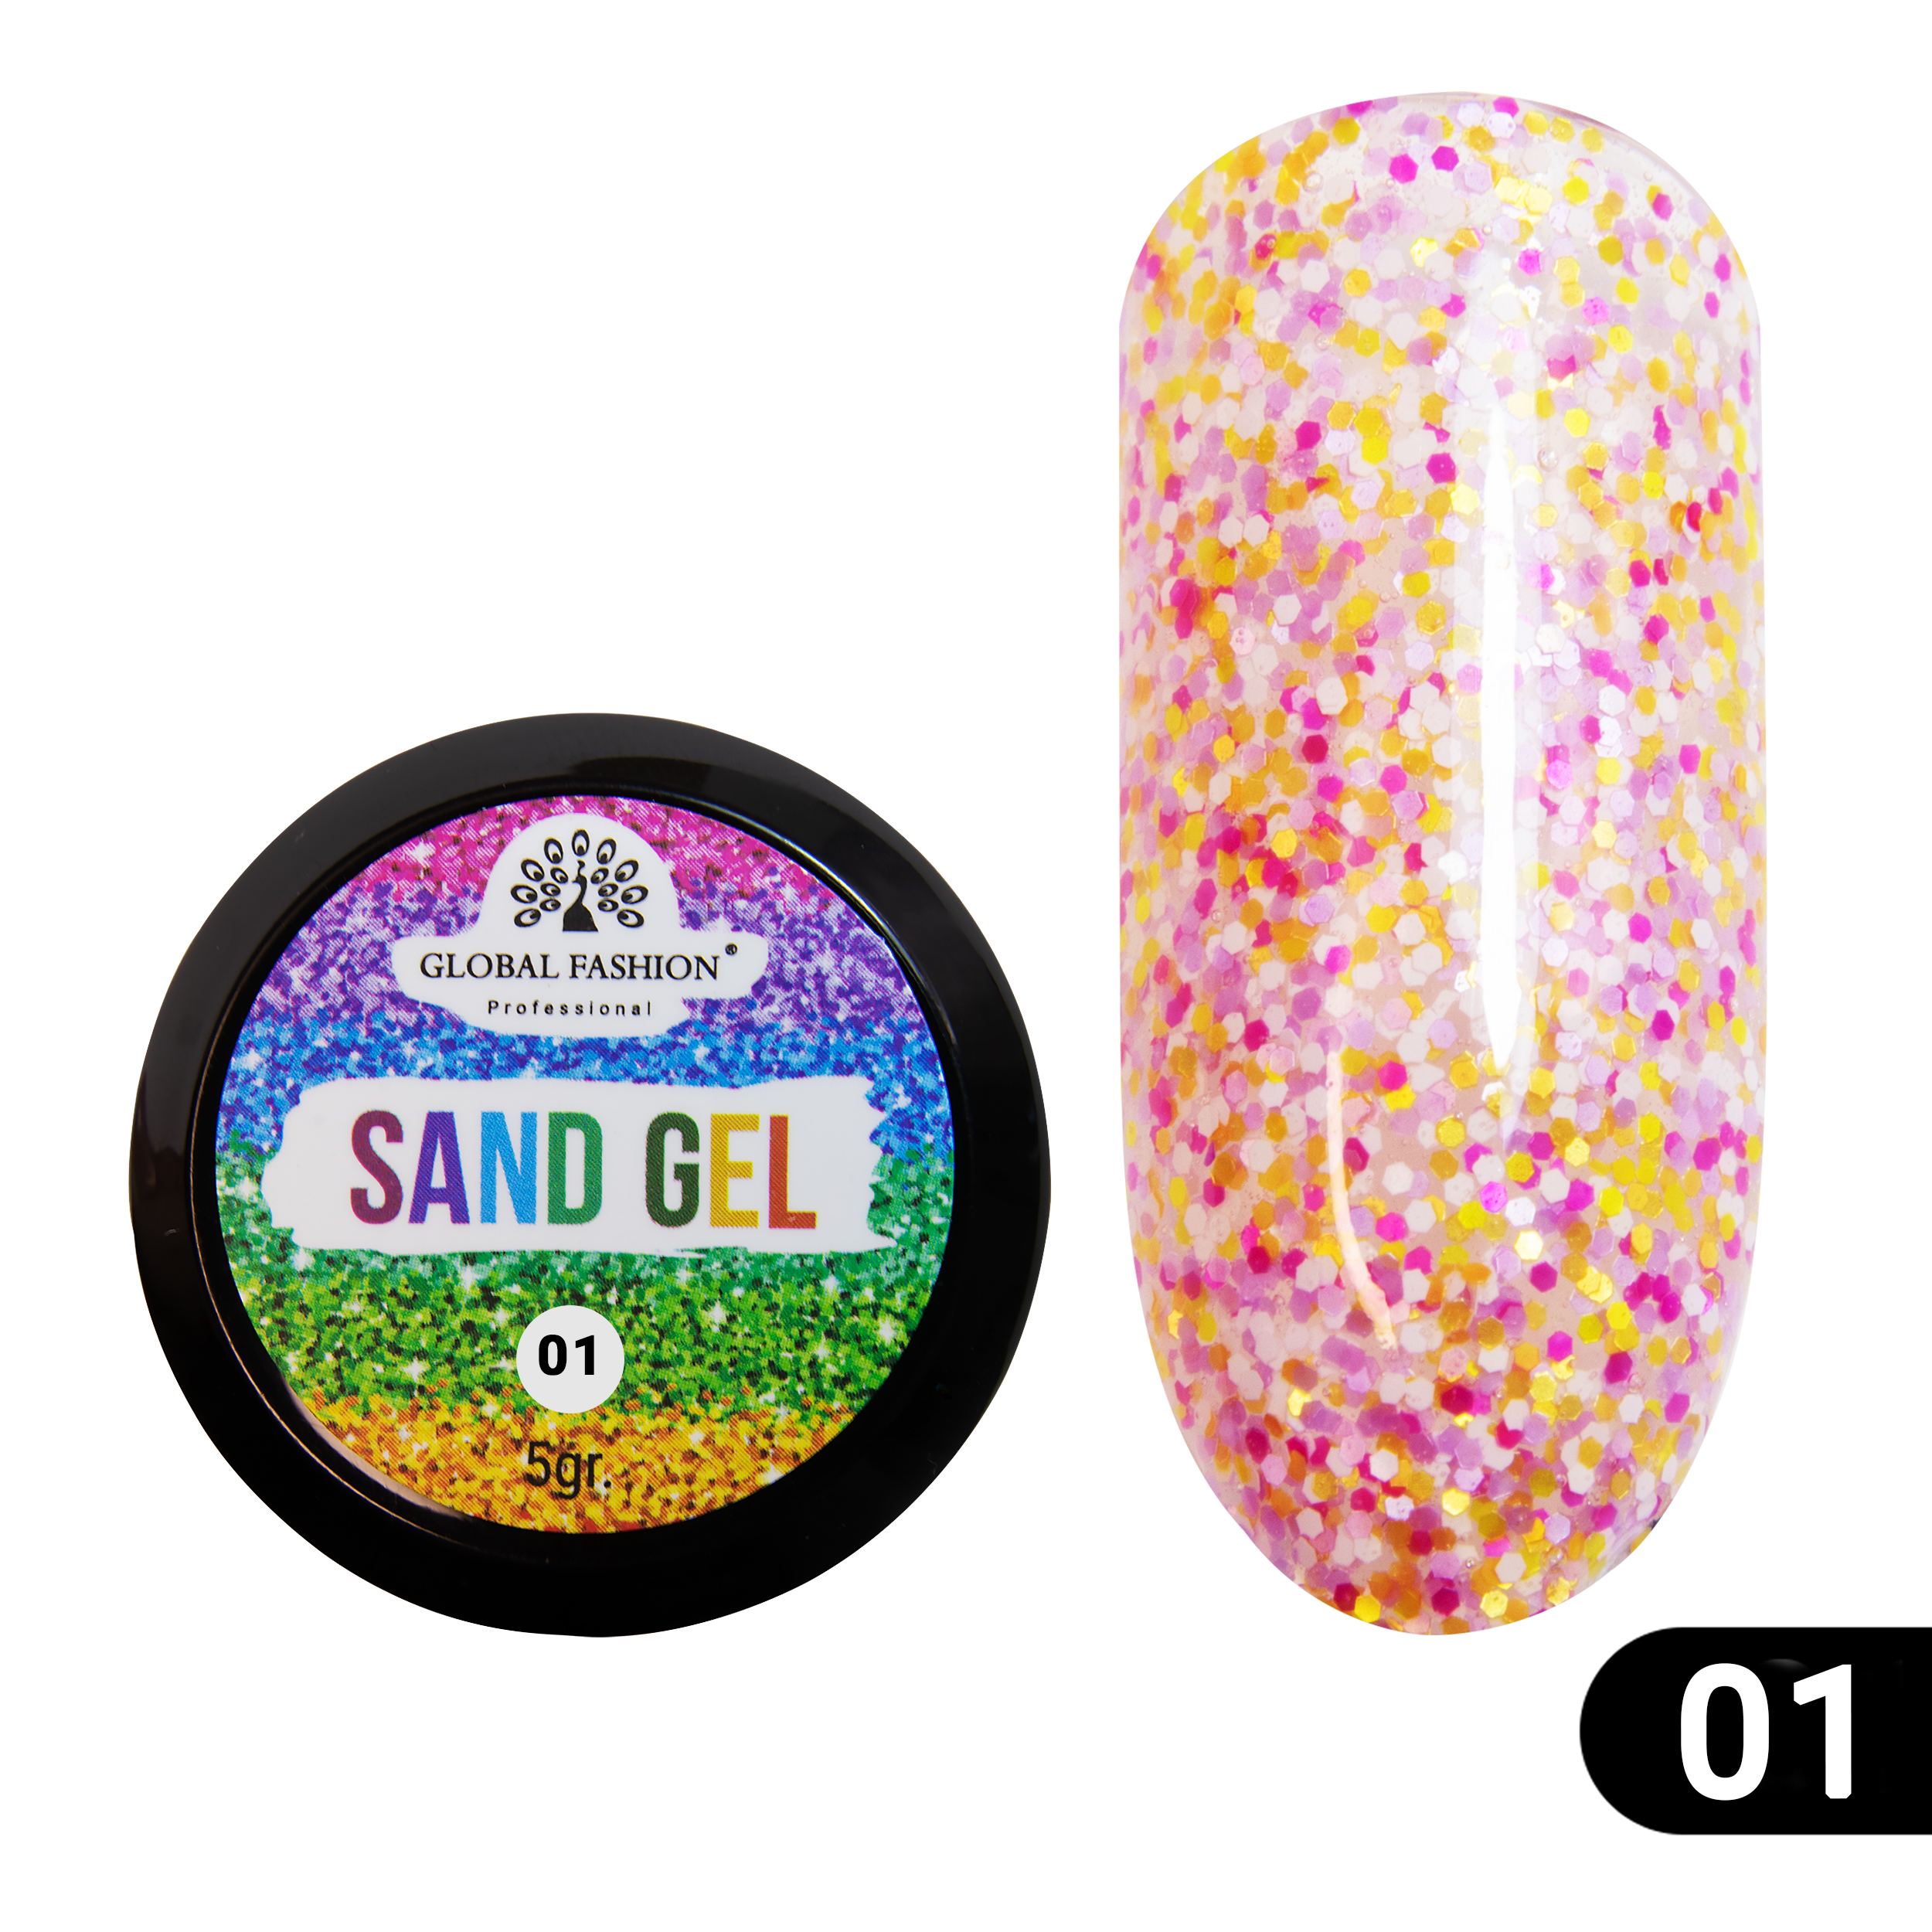 Гель-краска Sand gel Global Fashion 5 г 01